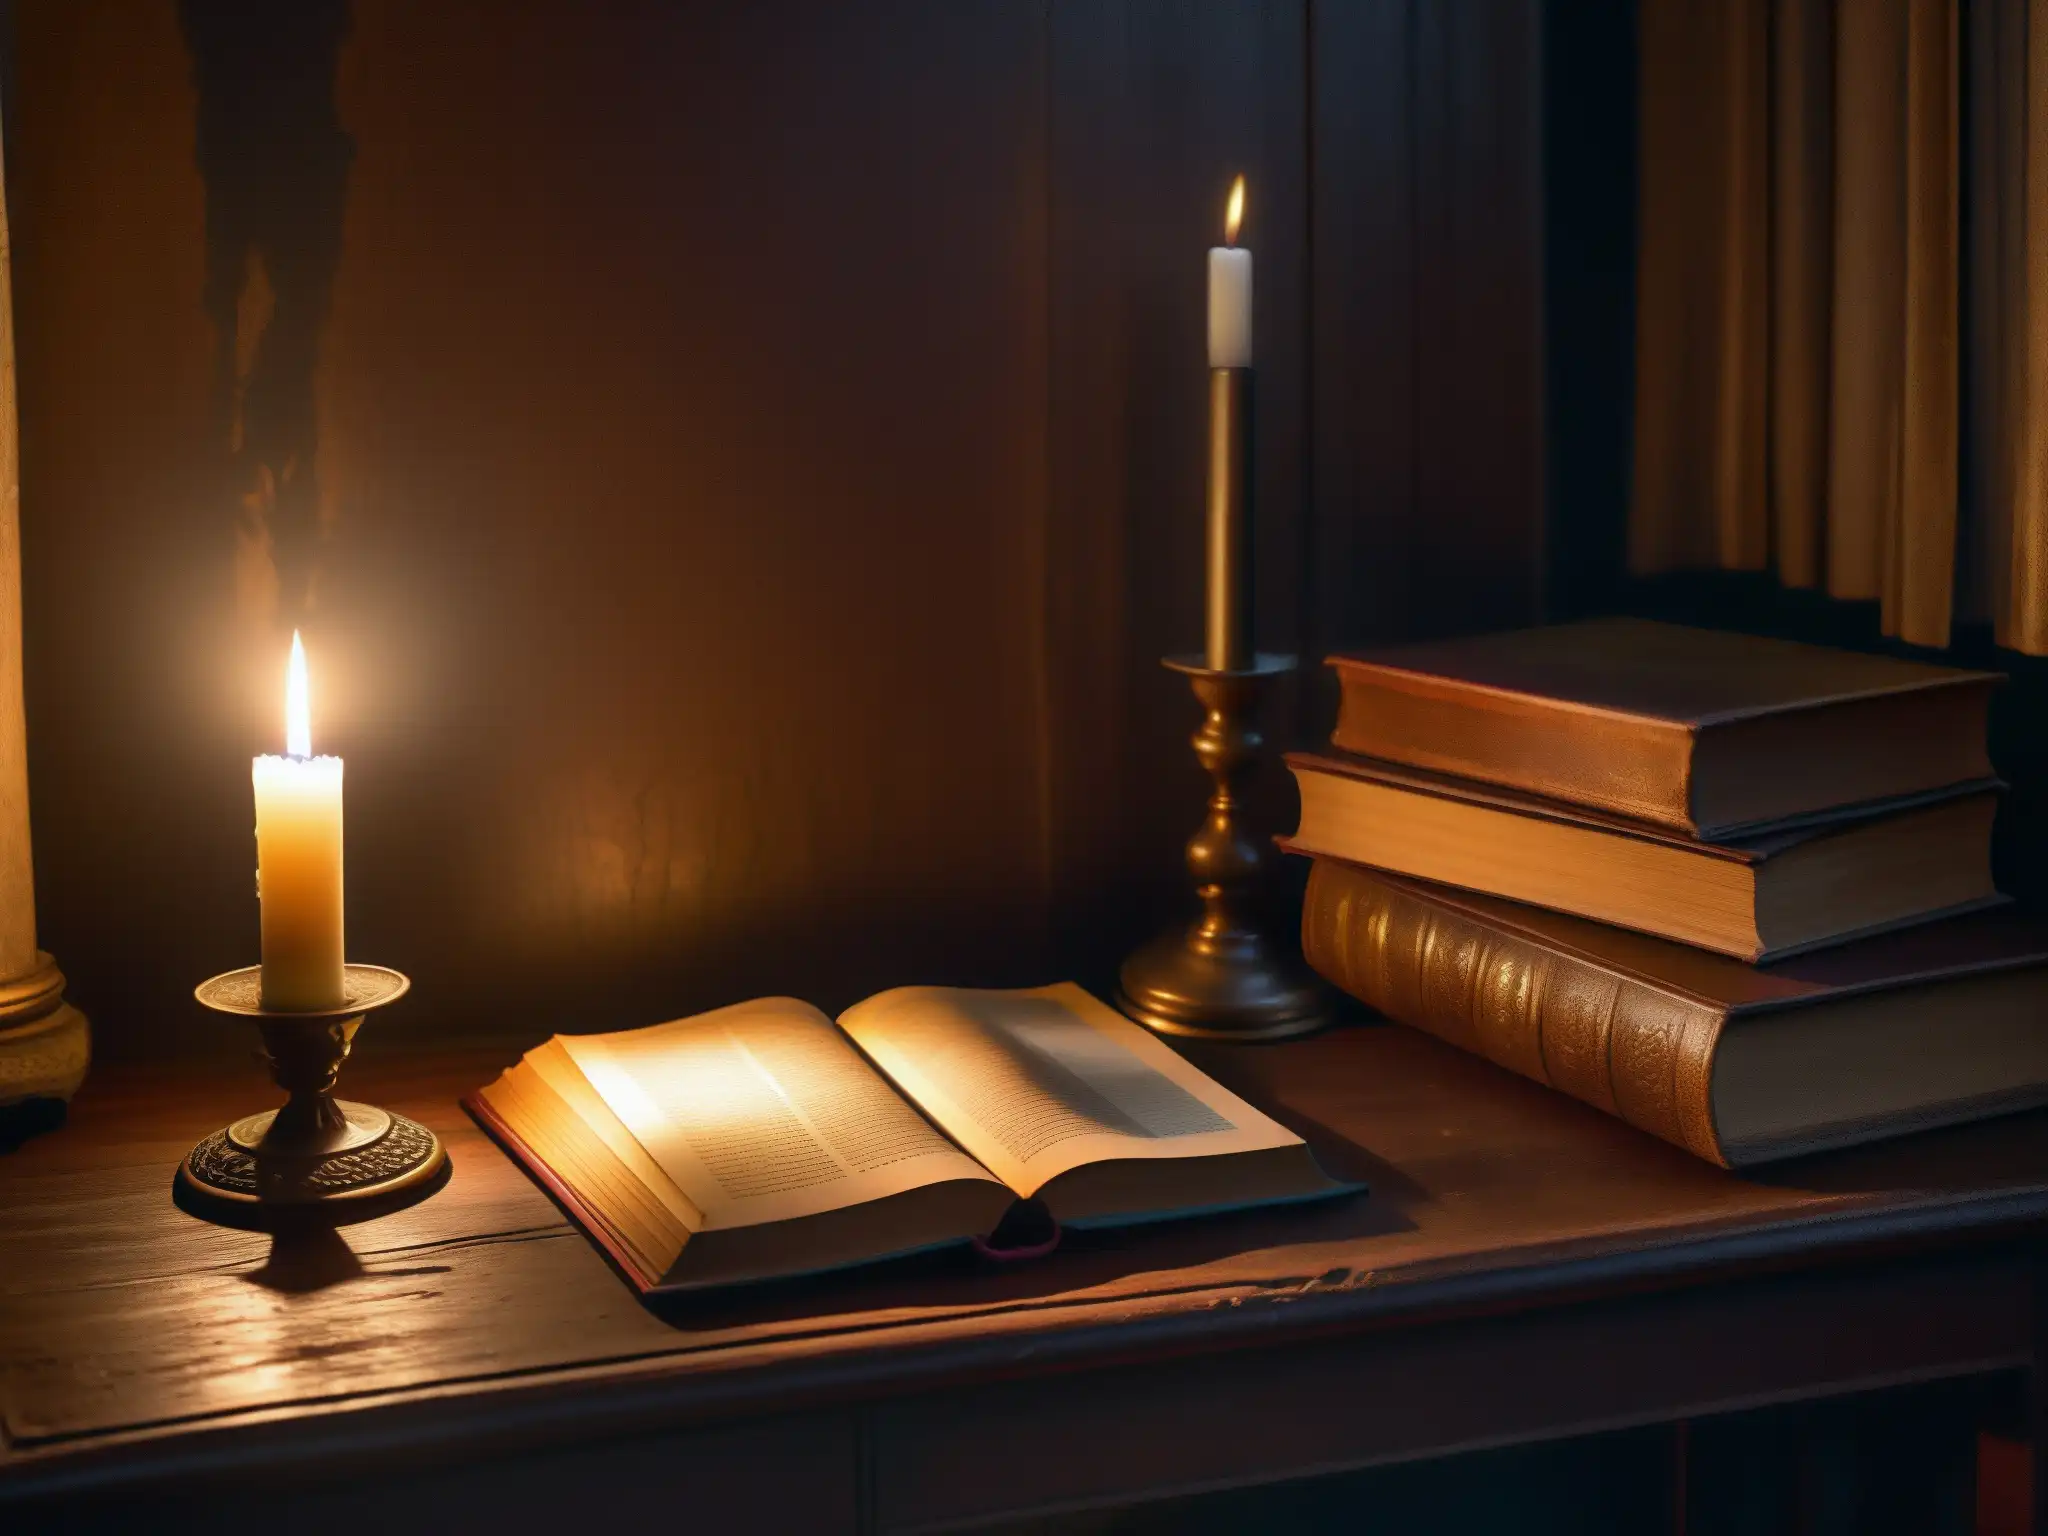 Enigmática escena de una habitación lúgubre con libros antiguos y una vela titilante, perfecta para amantes de historias macabras